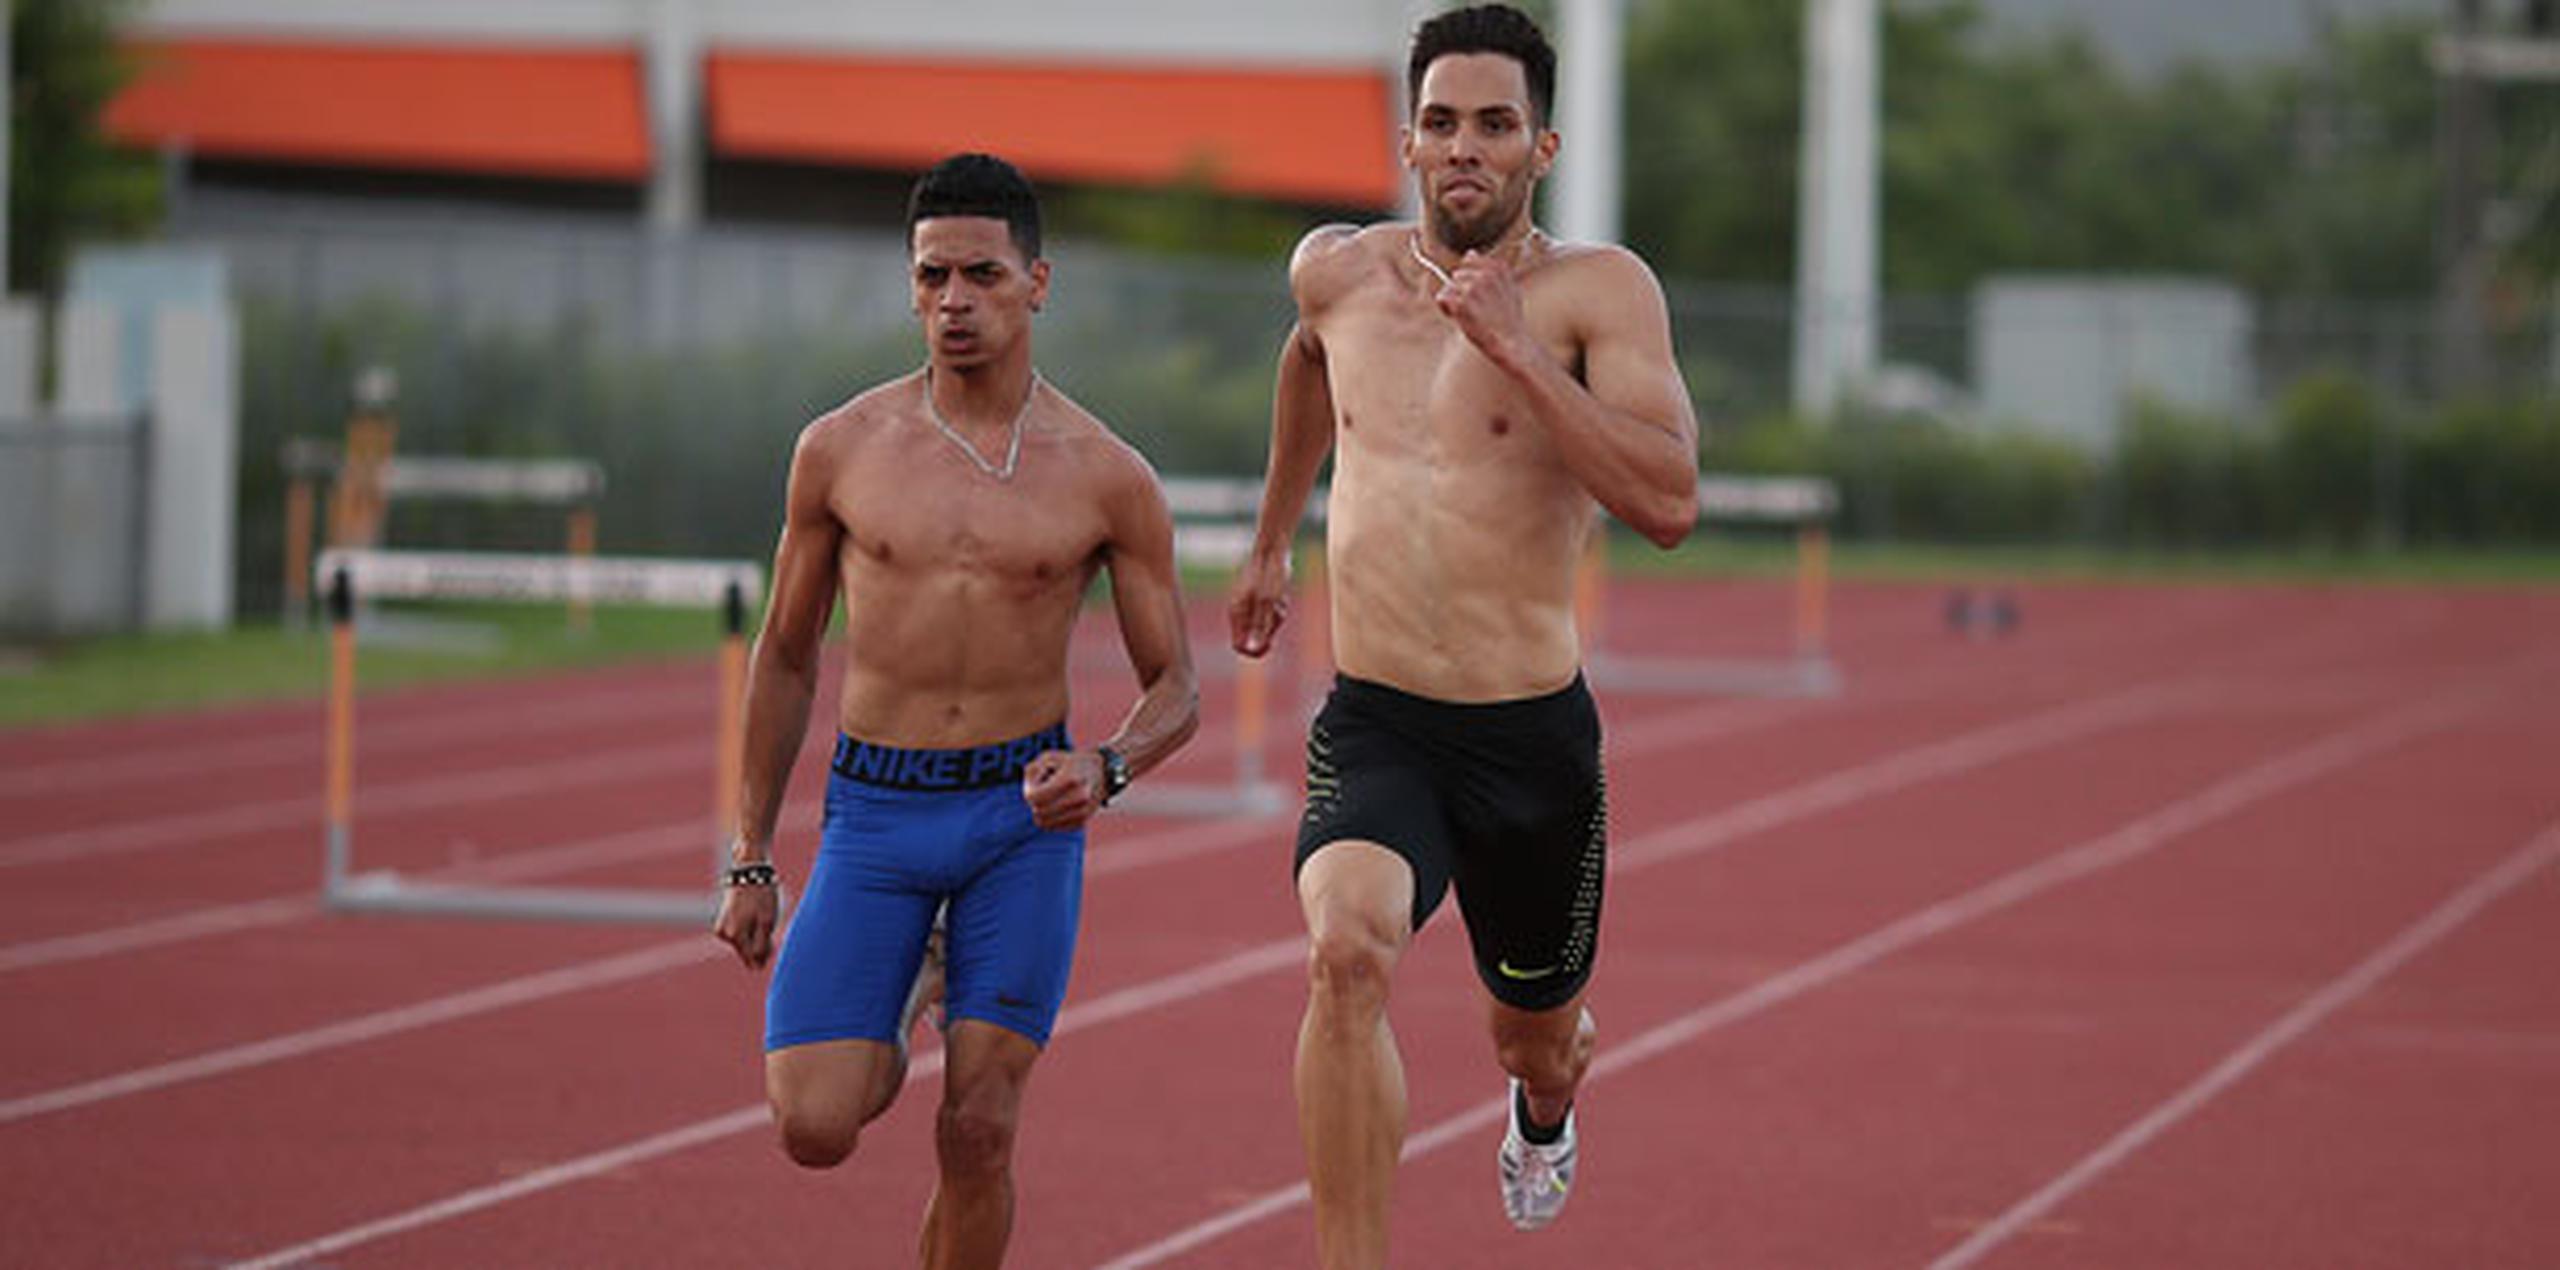 Vázquez y Arroyo competirán en los 800 metros de los Juegos Olímpicos de  Río 2016. (jose.cruz@gfrmedia.com)